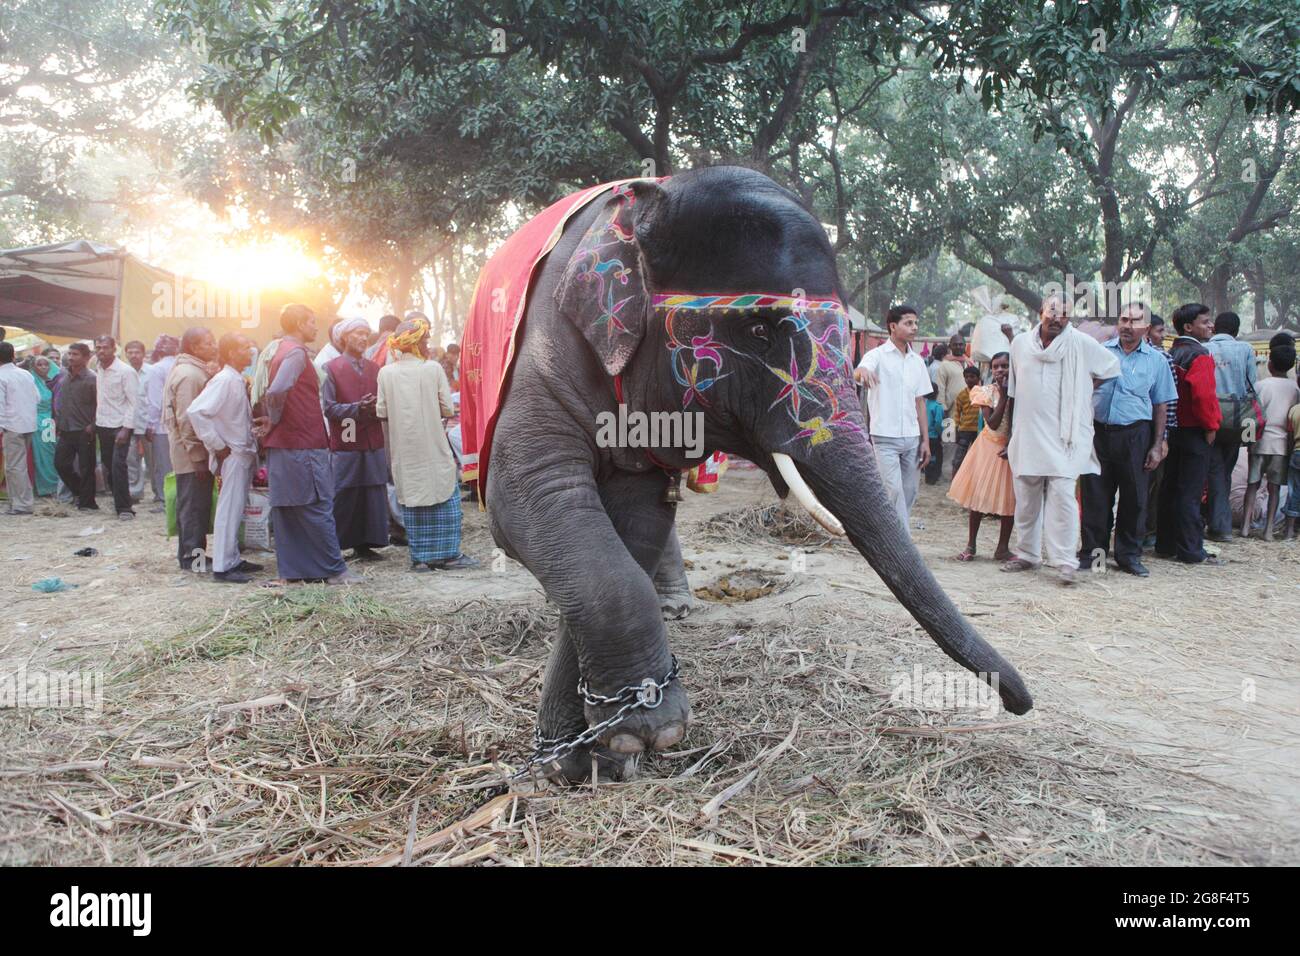 Elefanti decorati sono esposti per la vendita alla fiera di Sonpur, la più grande fiera di vendita di animali in Asia. La fiera ha più di mille anni. Foto Stock